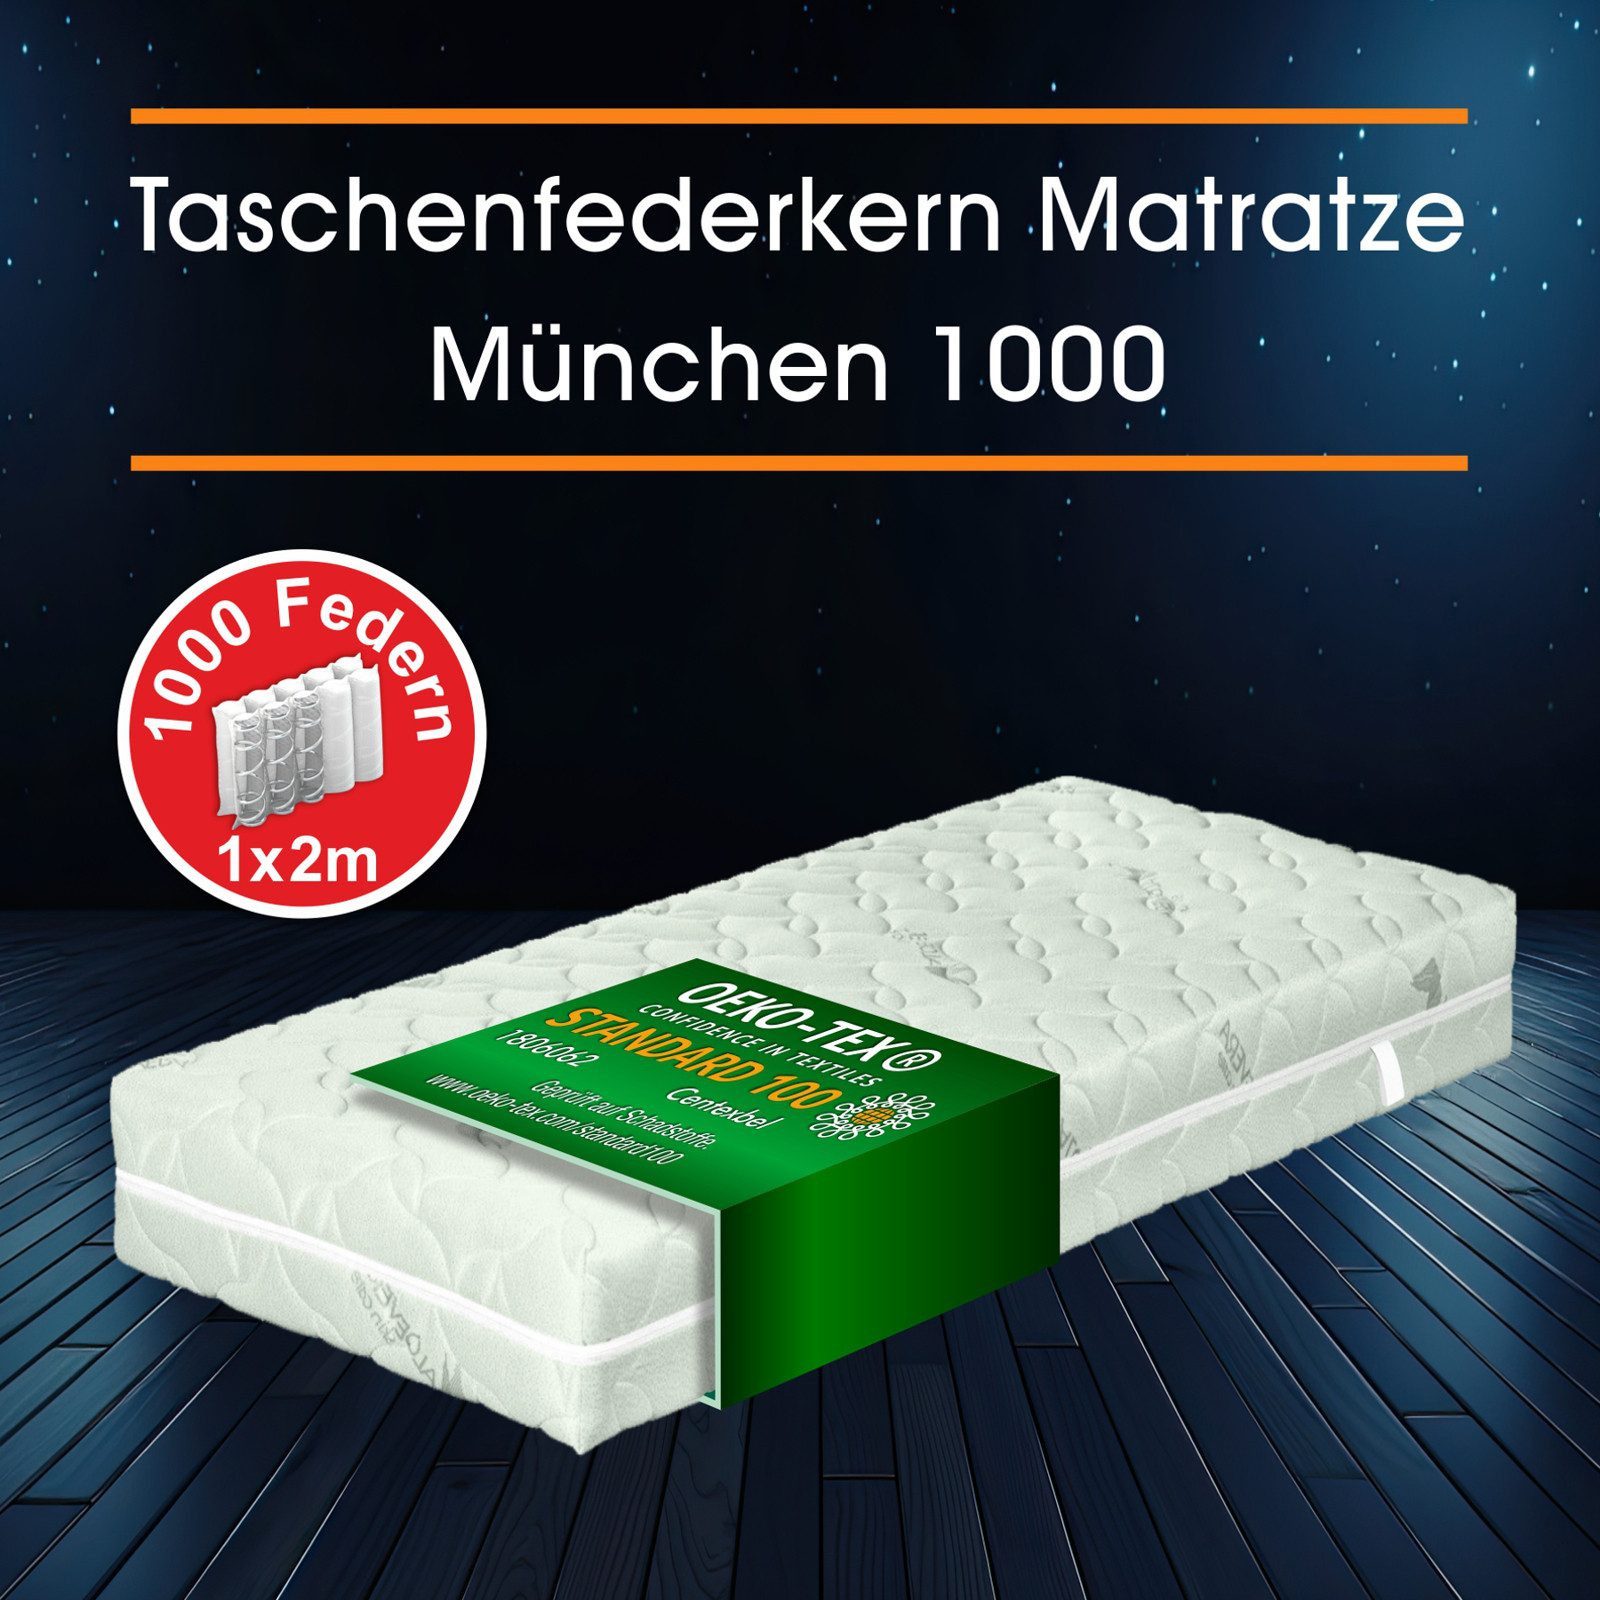 Taschenfederkernmatratze Taschenfederkern Matratze München, 7 Zonen, mit 1000 Federn, Matratzen Perfekt, 23 cm hoch, Tonnentaschenfederkern-Matratze für eine gute Punktelastizität